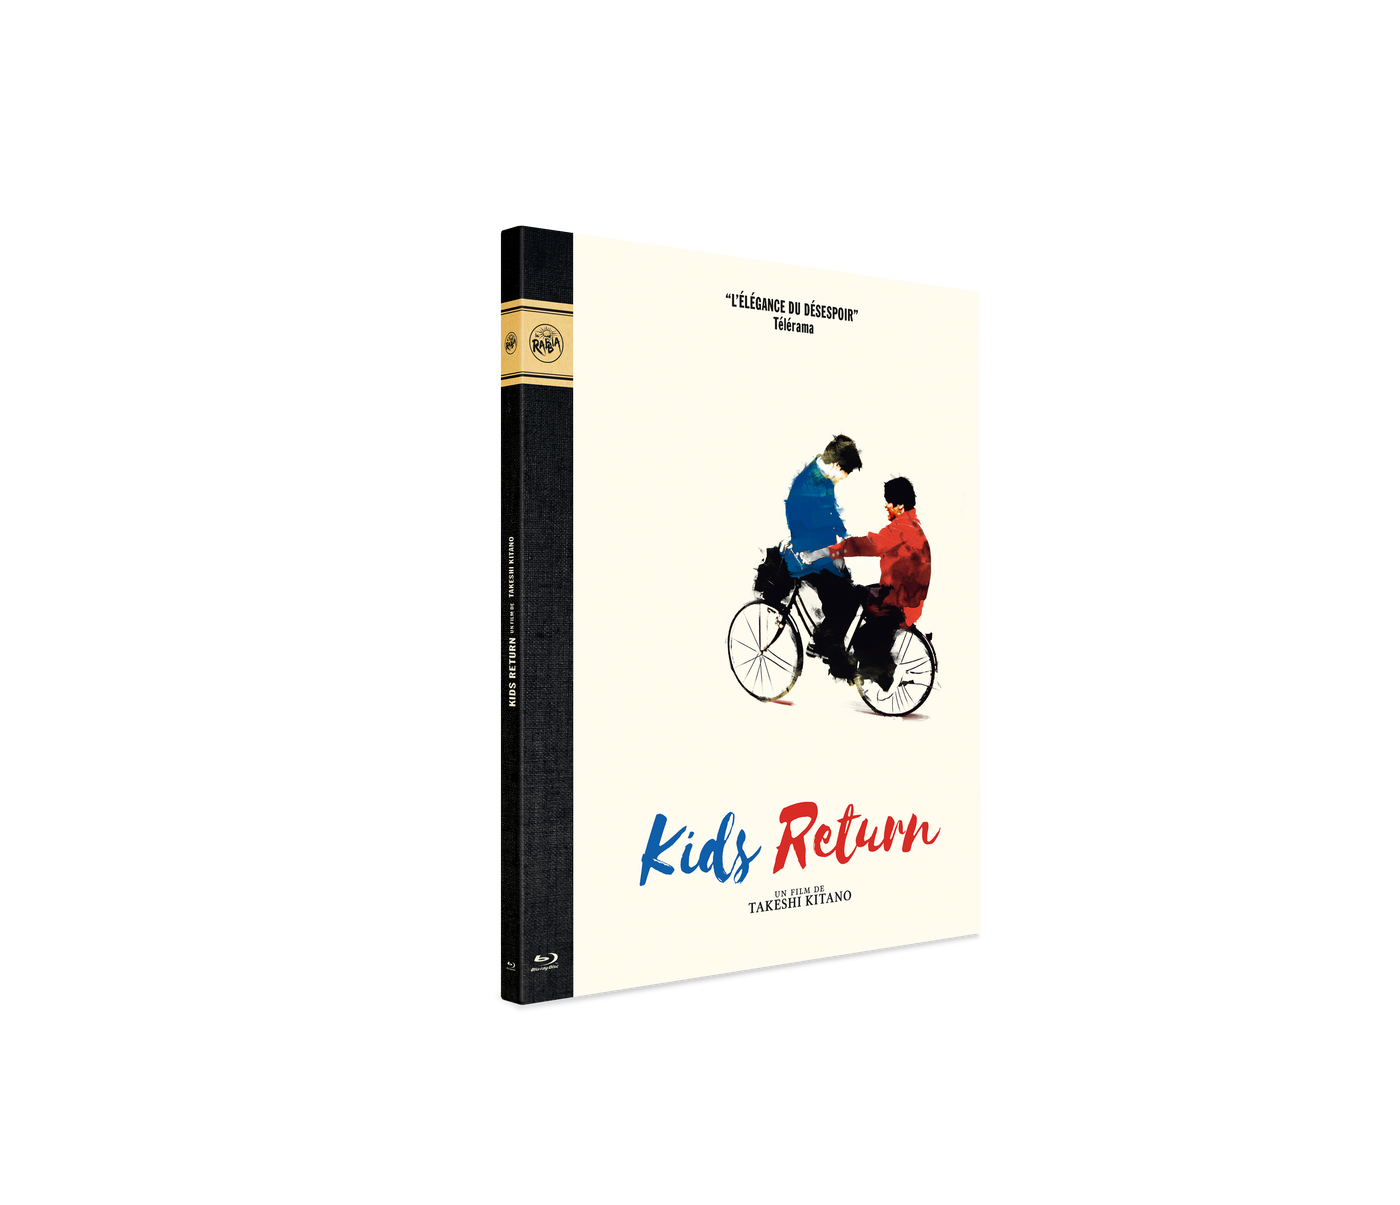 Blu-Ray Digipack "Kids Return"